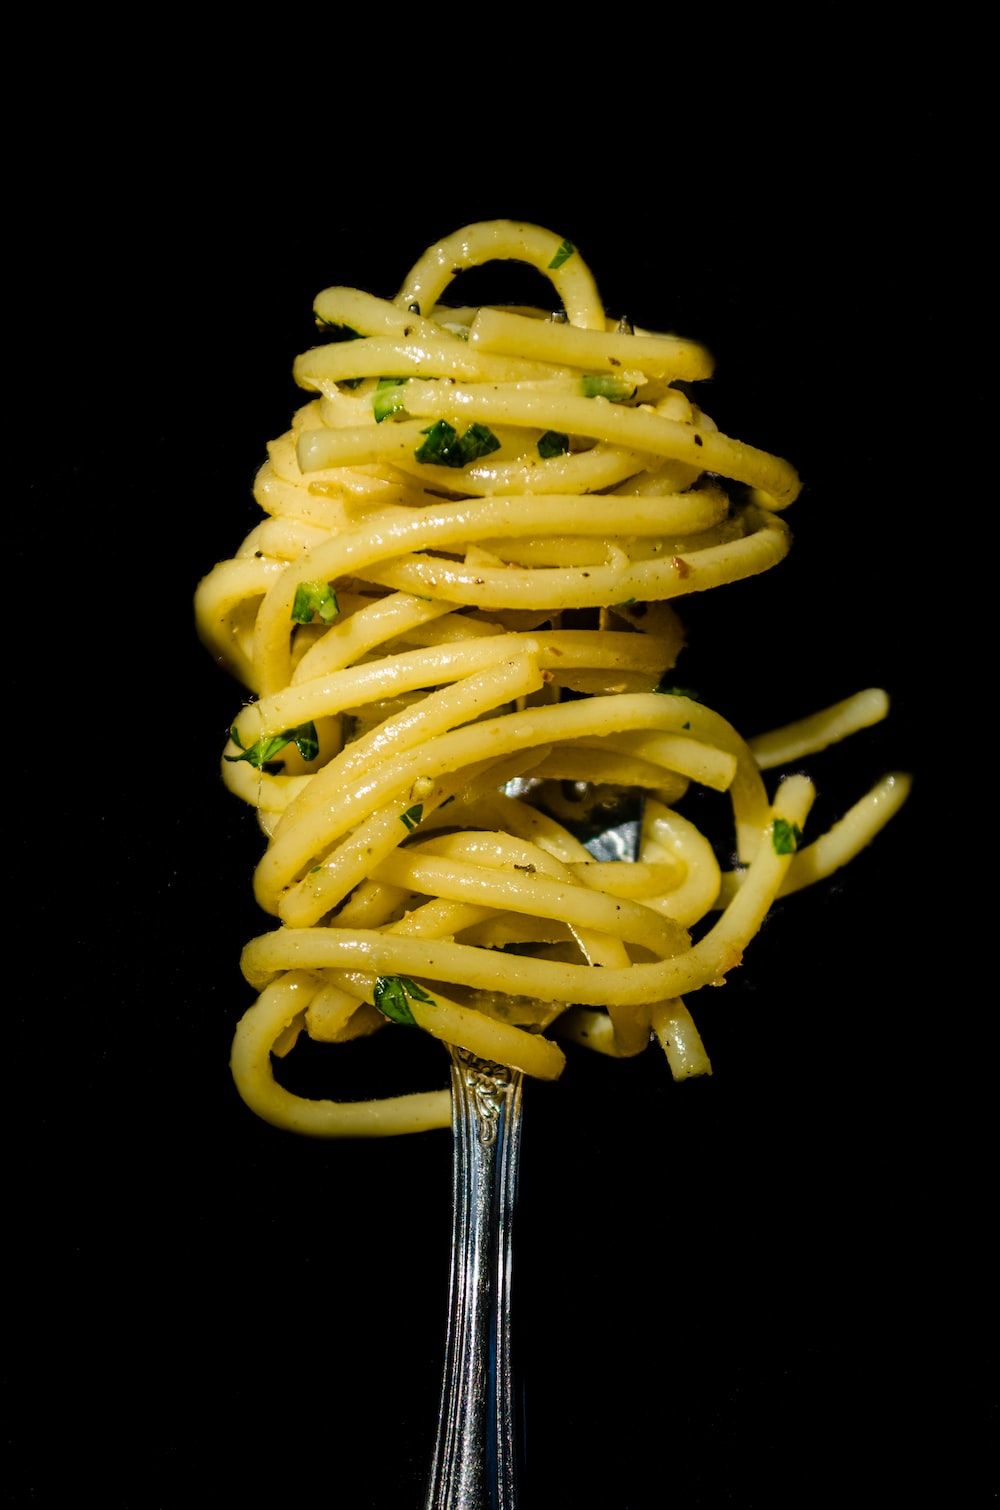  Nudeln Hintergrundbild 1000x1510. Foto zum Thema Pasta mit grüner Soße auf schwarzem Hintergrund